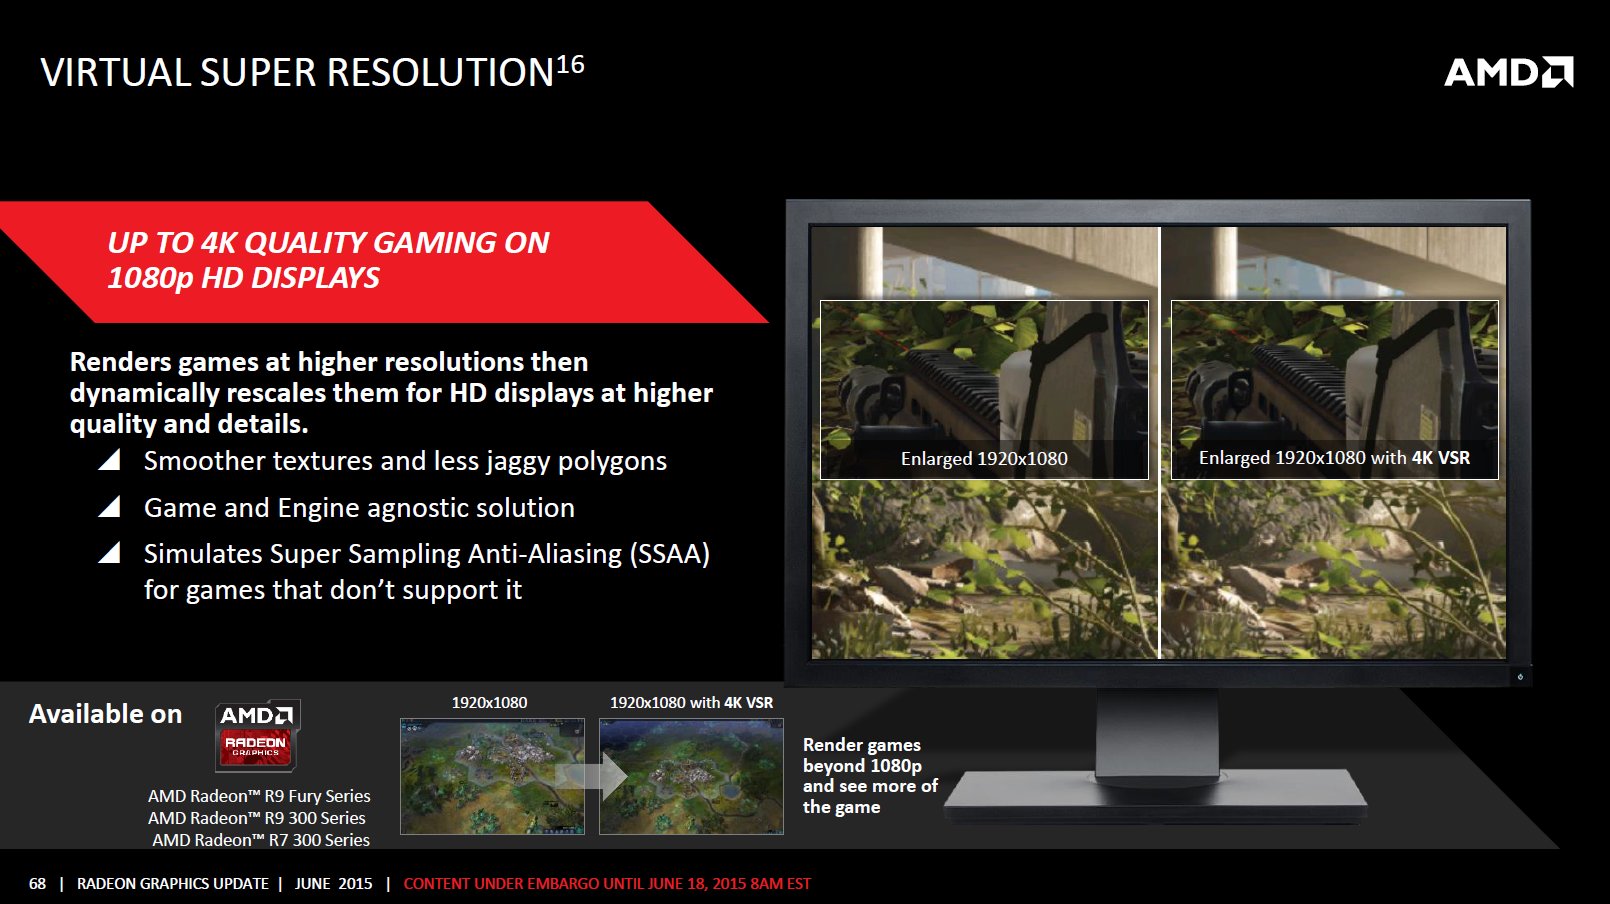 AMDs Virtual Super Resolution (VSR)